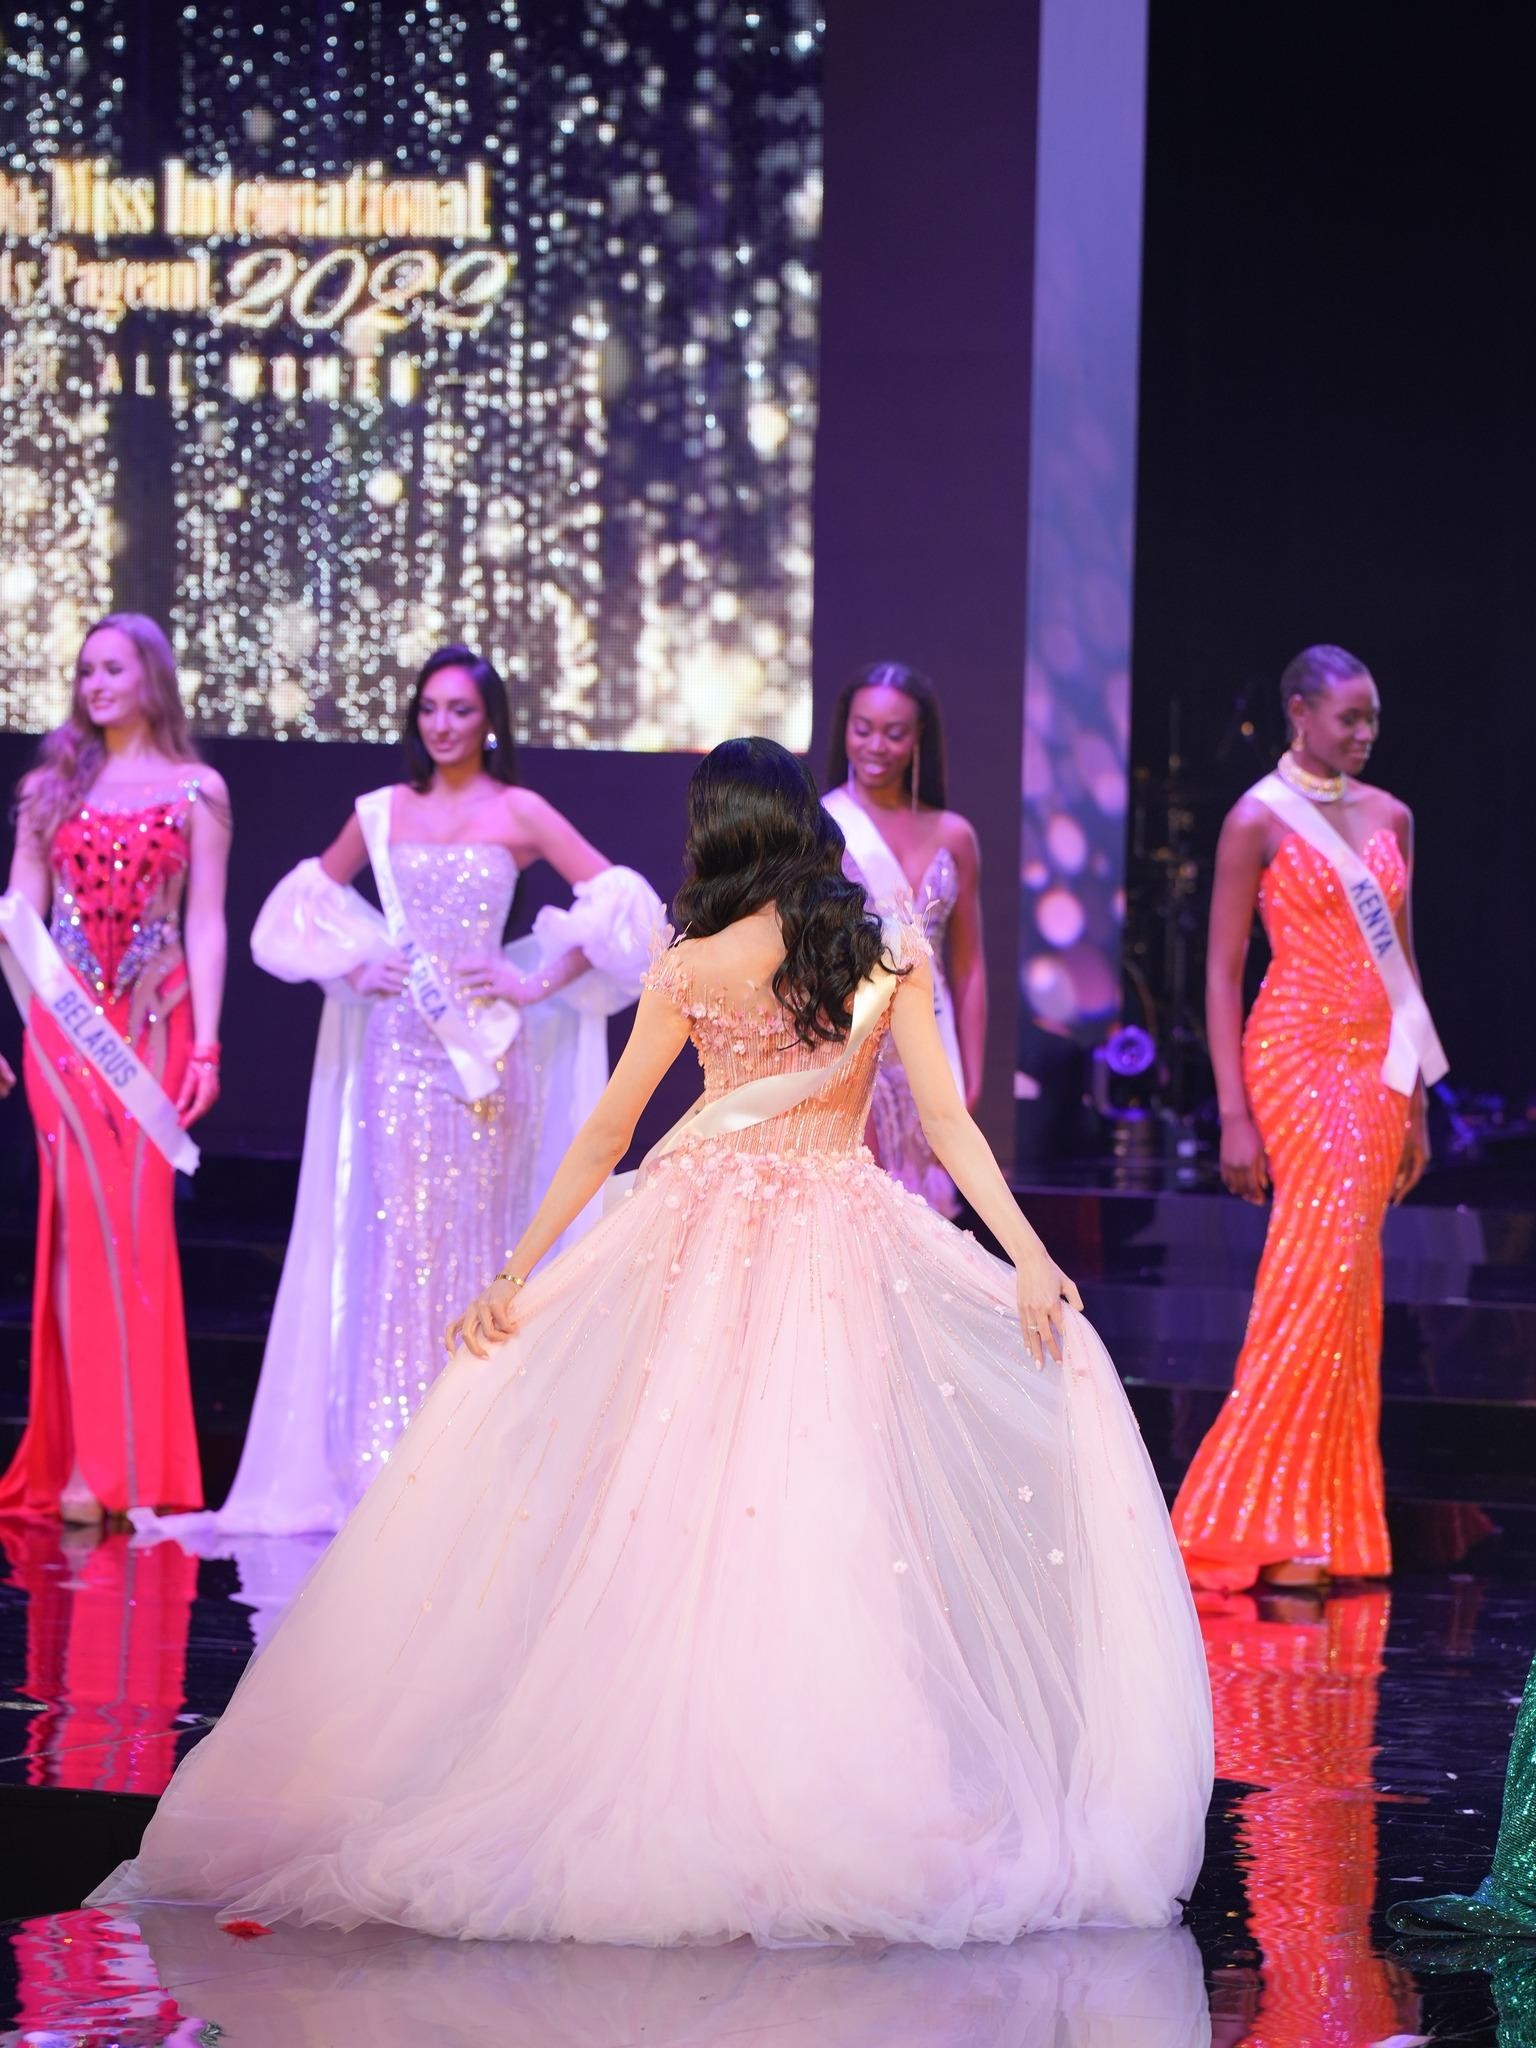 Váy dạ hội táo bạo ở chung kết Hoa hậu Quốc tế 2022 - Ảnh 3.